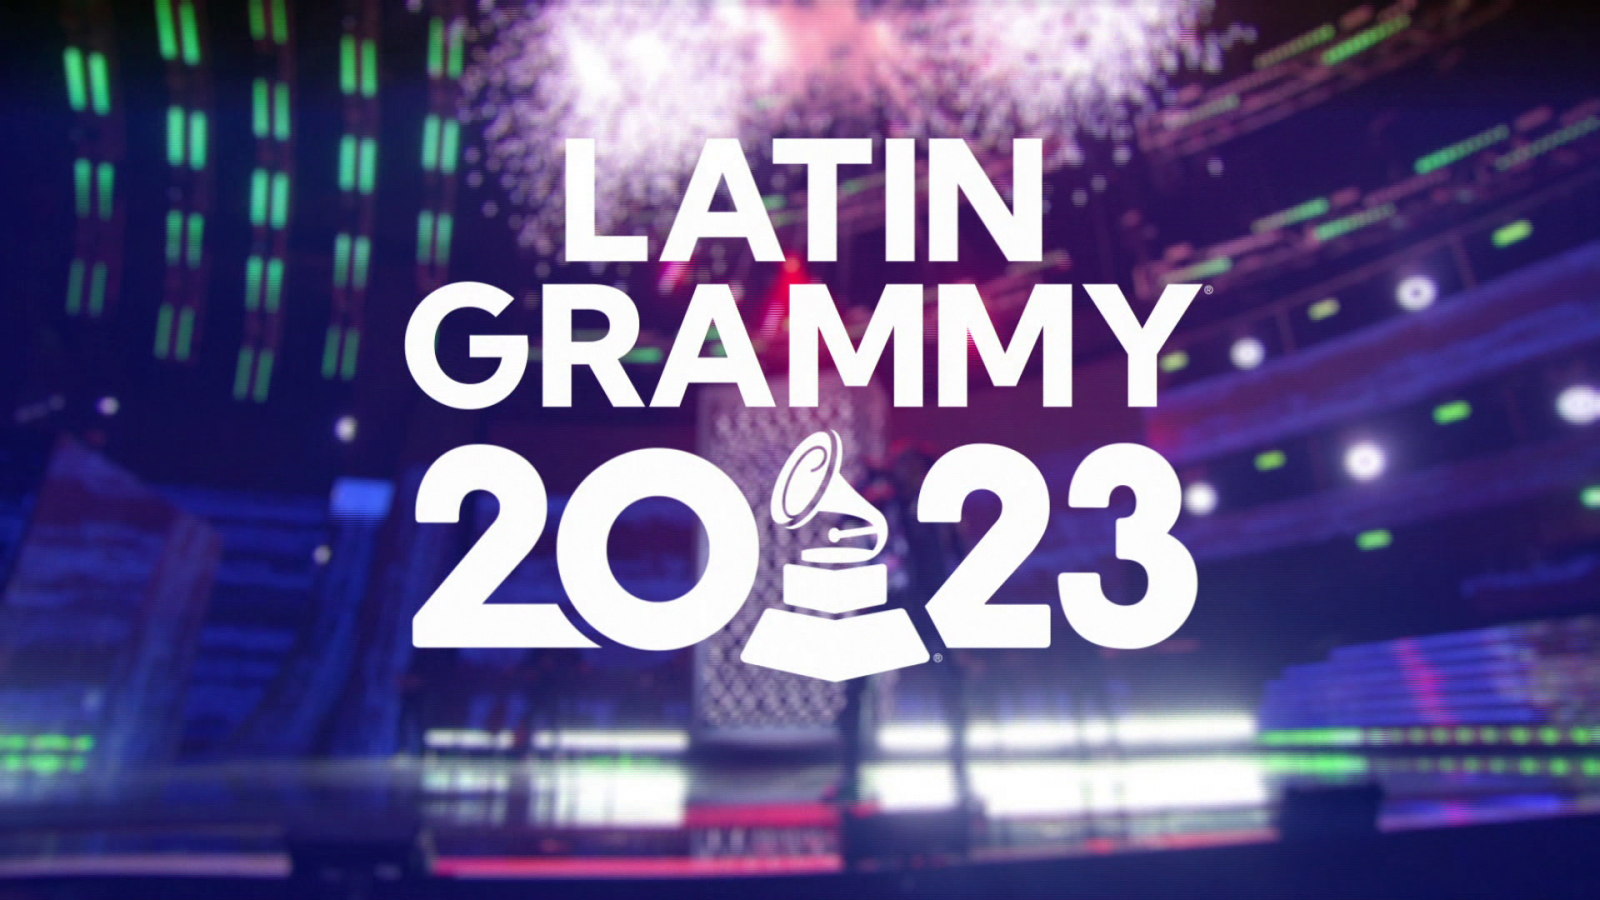 Los Latin Grammy se celebran por primera vez en España. Vive la noche más importante de la música latina, desde Sevilla, en RTVE.